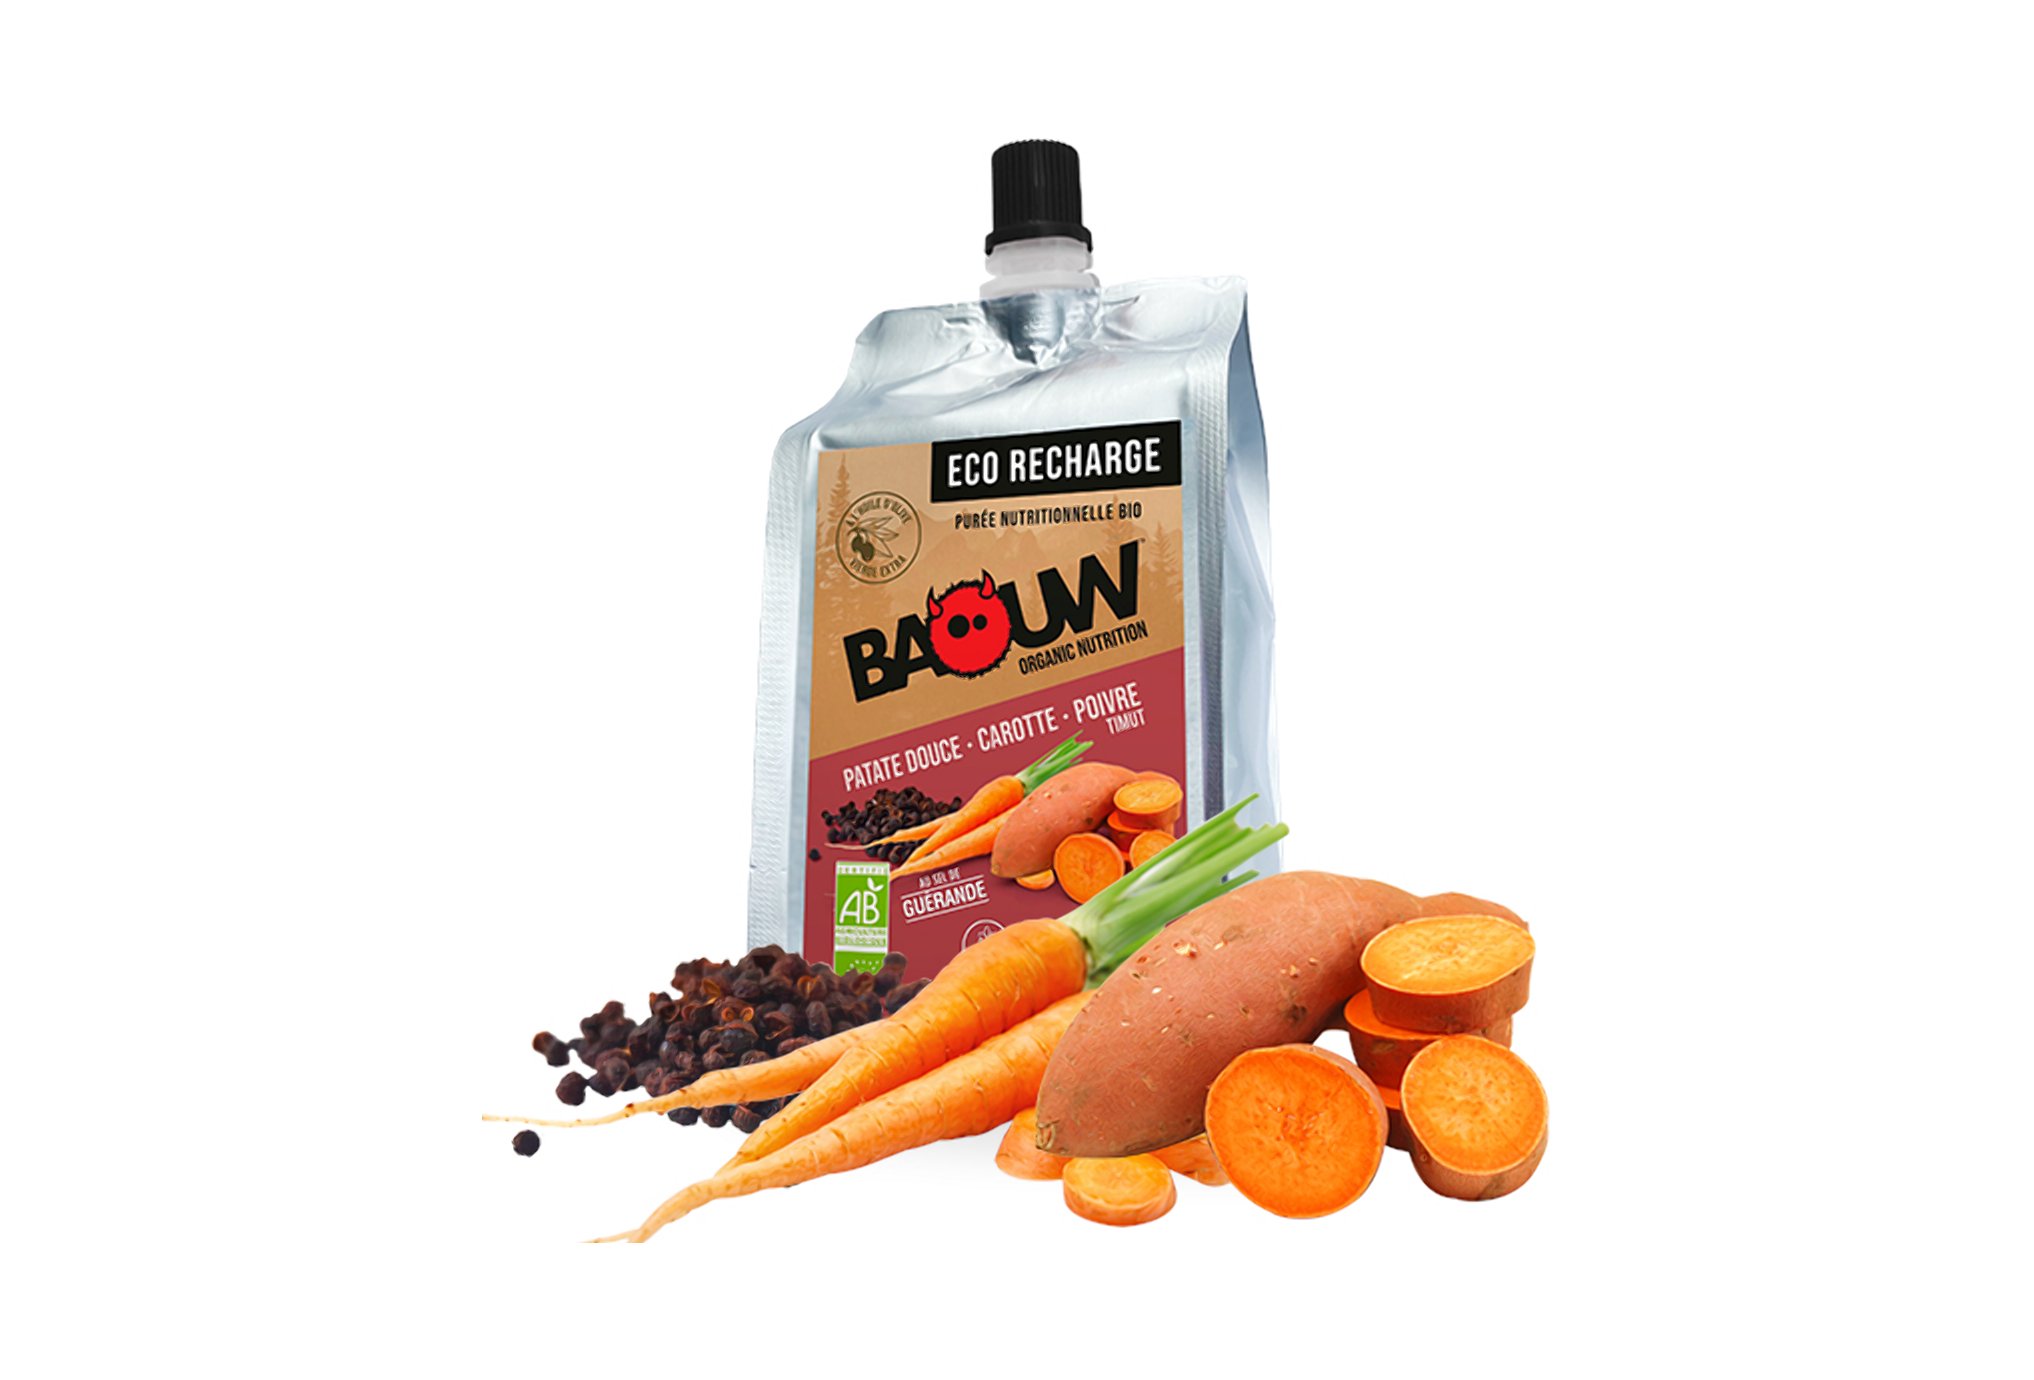 Baouw Eco recharge XXL purée nutritionnelle bio - Patate douce - Carotte - Poivre Timut Diététique Gels